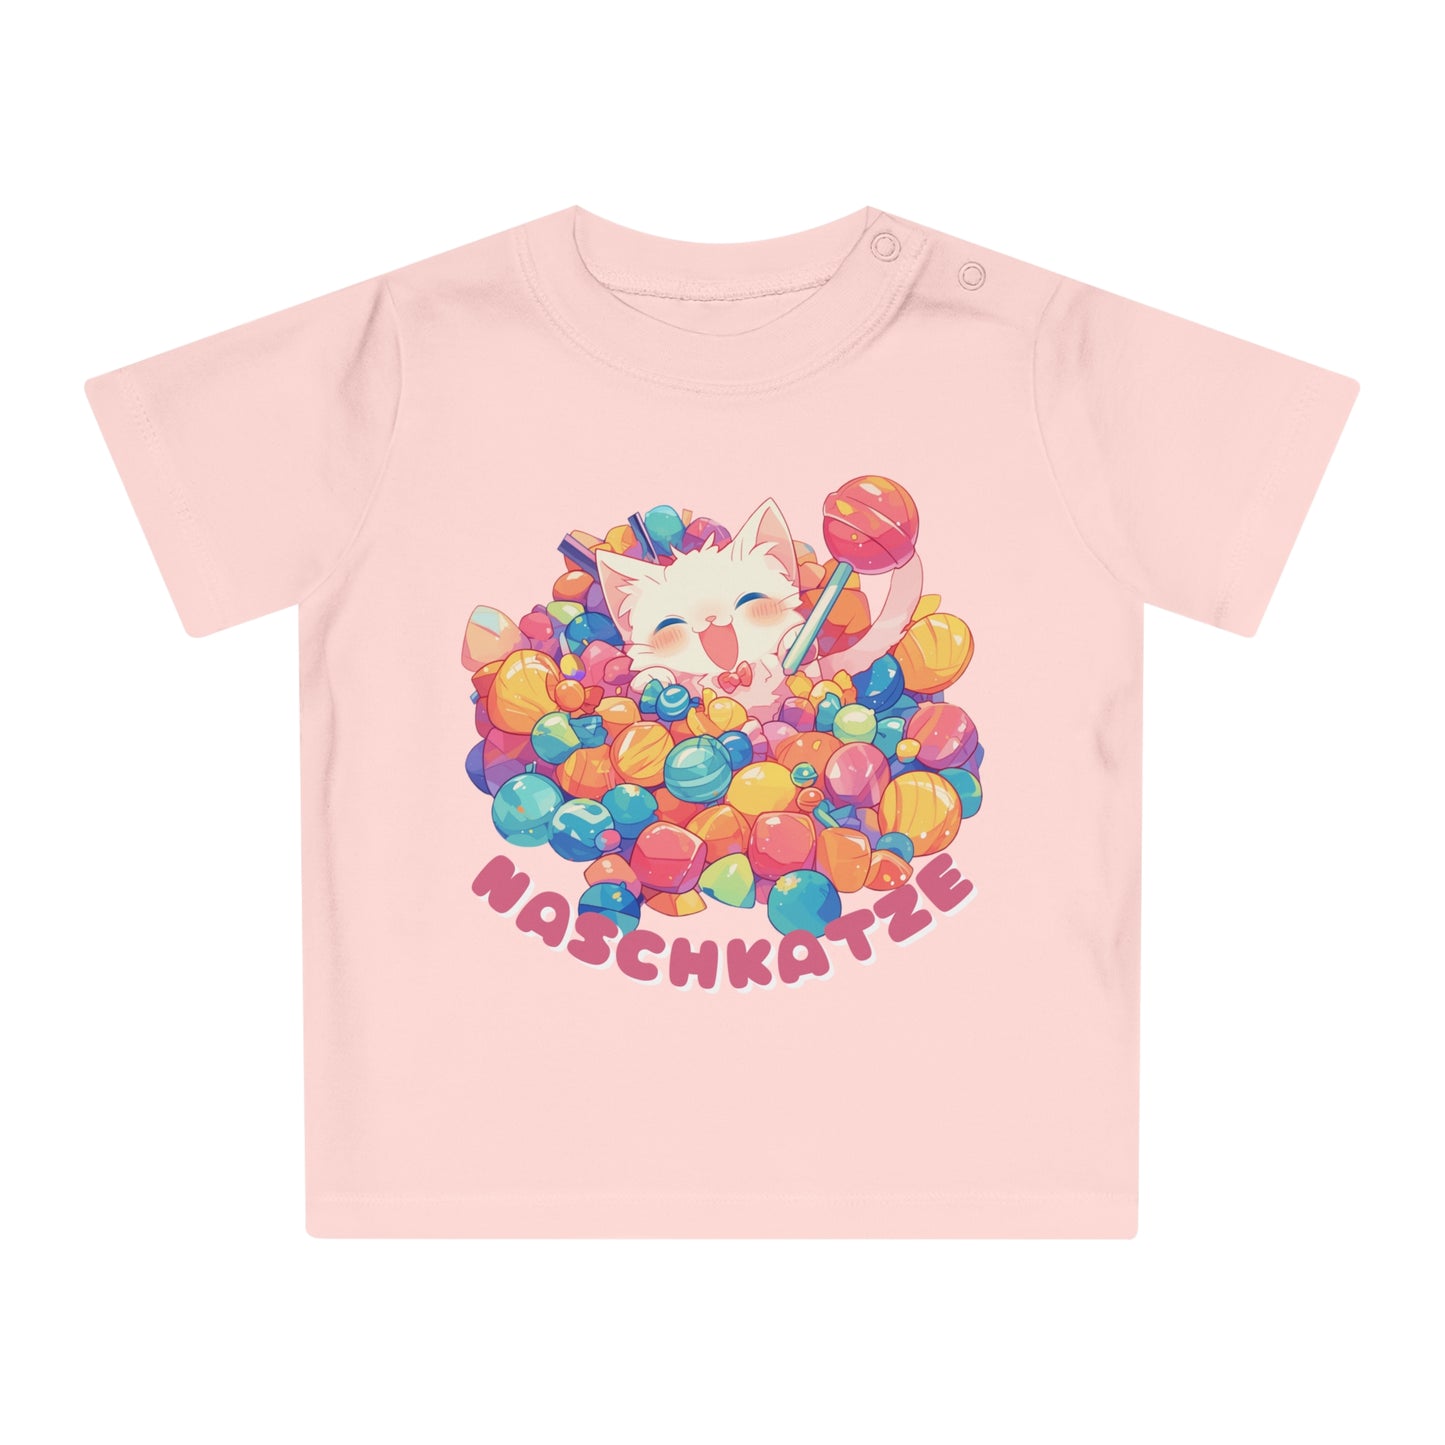 Baby Grafik-T-Shirt Naschkatze